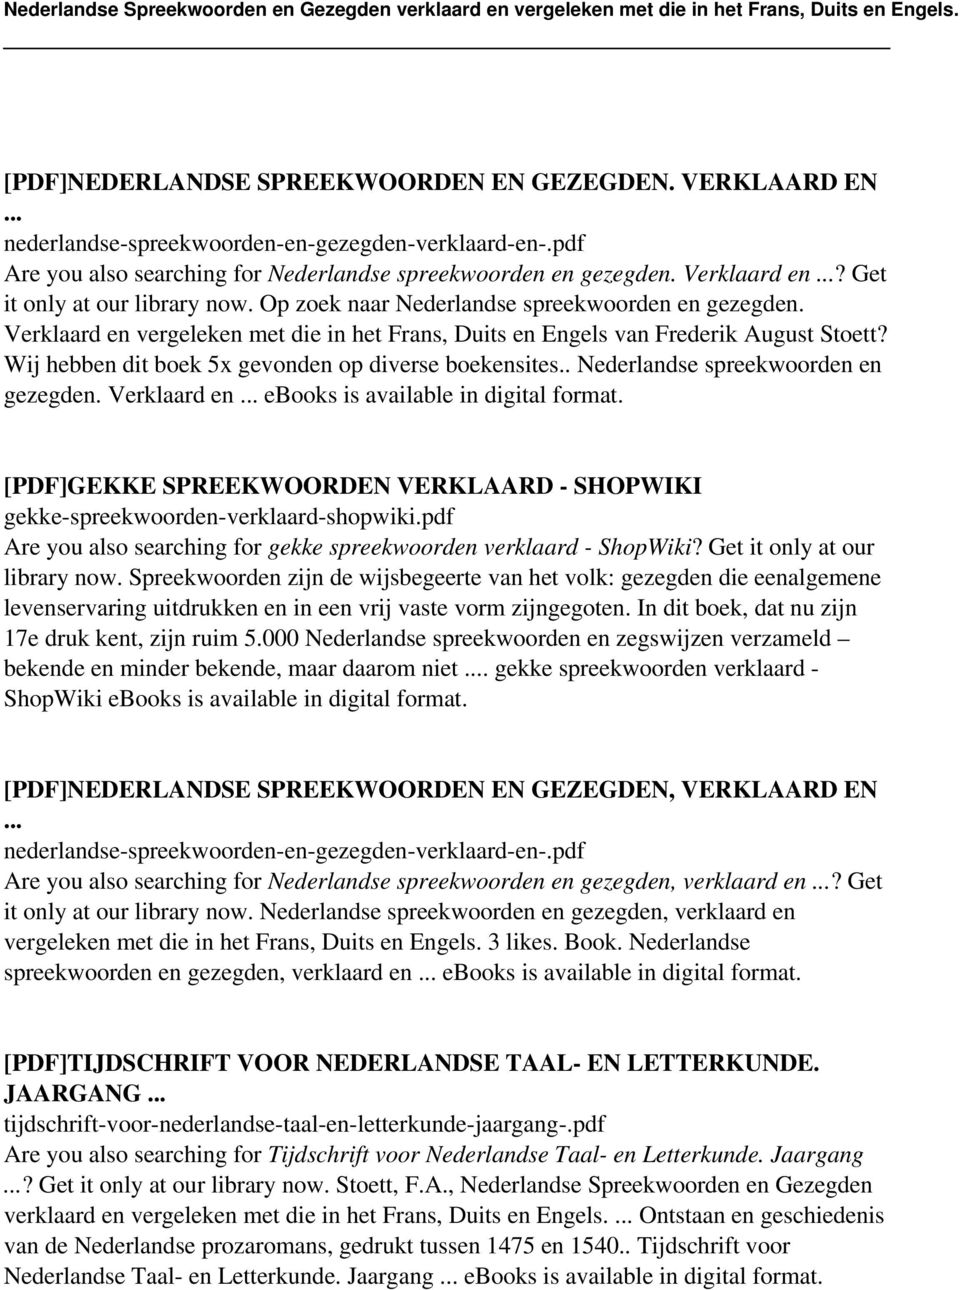 . Nederlandse spreekwoorden en gezegden. Verklaard en ebooks is [PDF]GEKKE SPREEKWOORDEN VERKLAARD - SHOPWIKI gekke-spreekwoorden-verklaard-shopwiki.